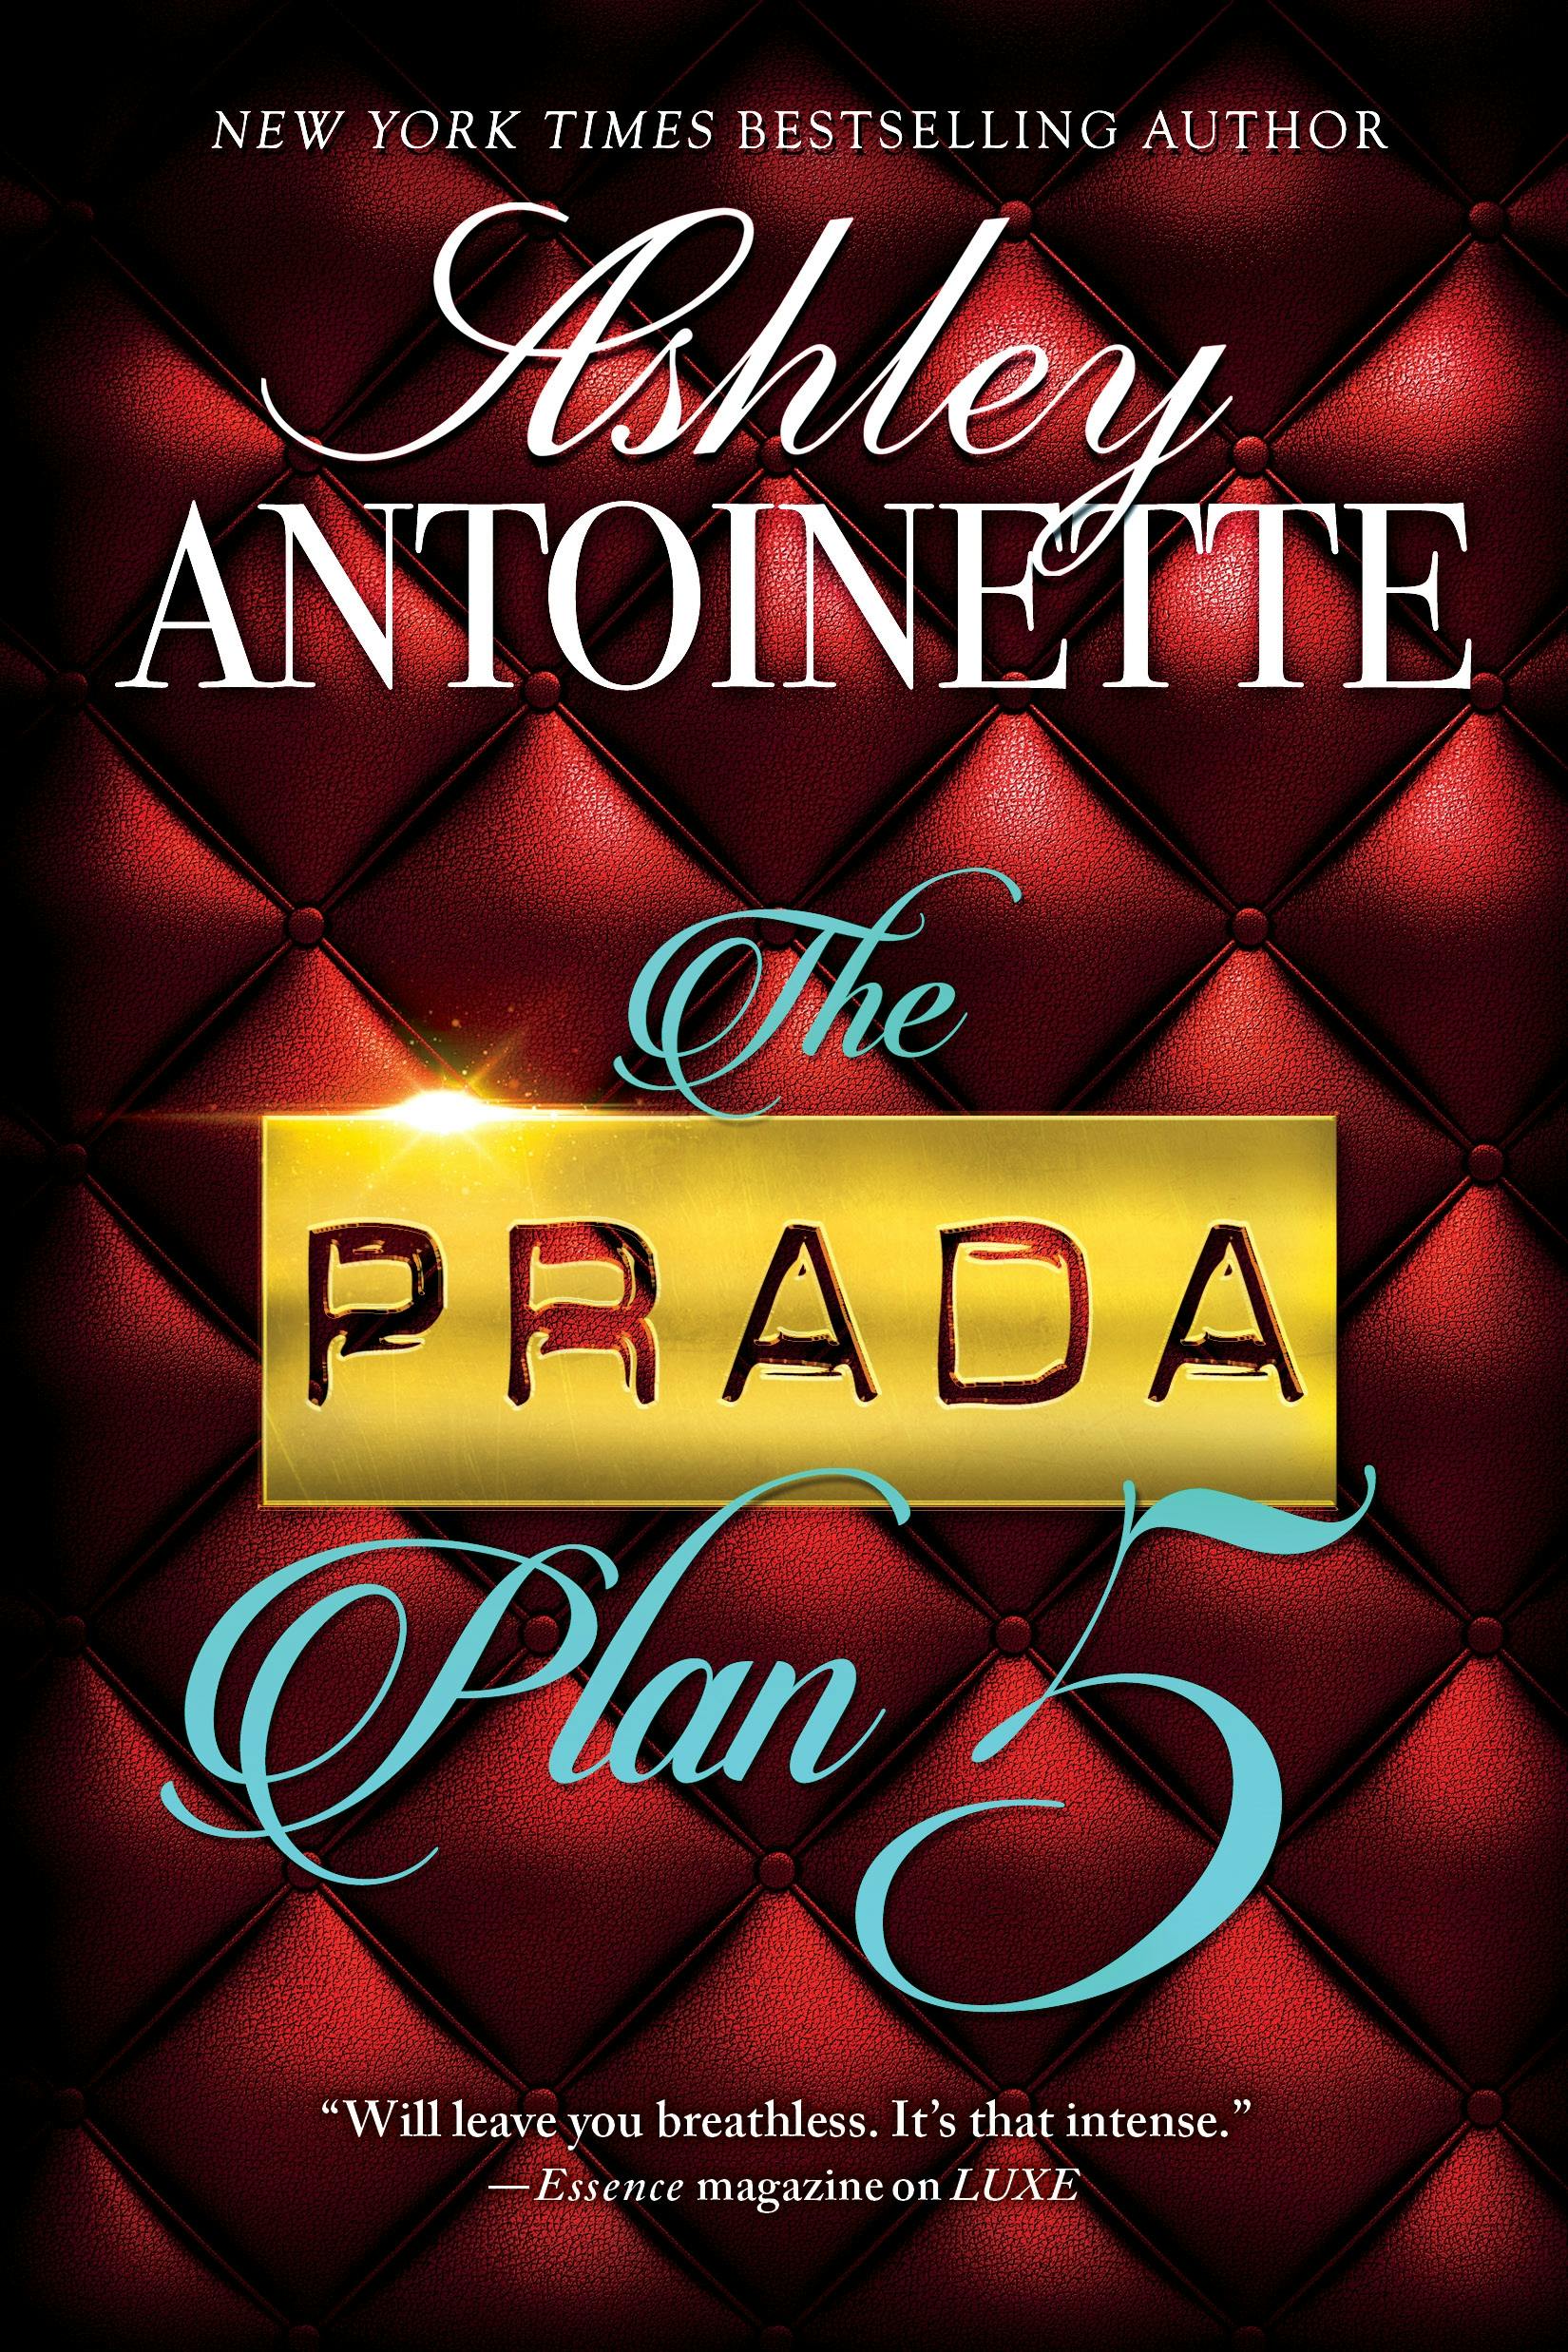 Image of The Prada Plan 5